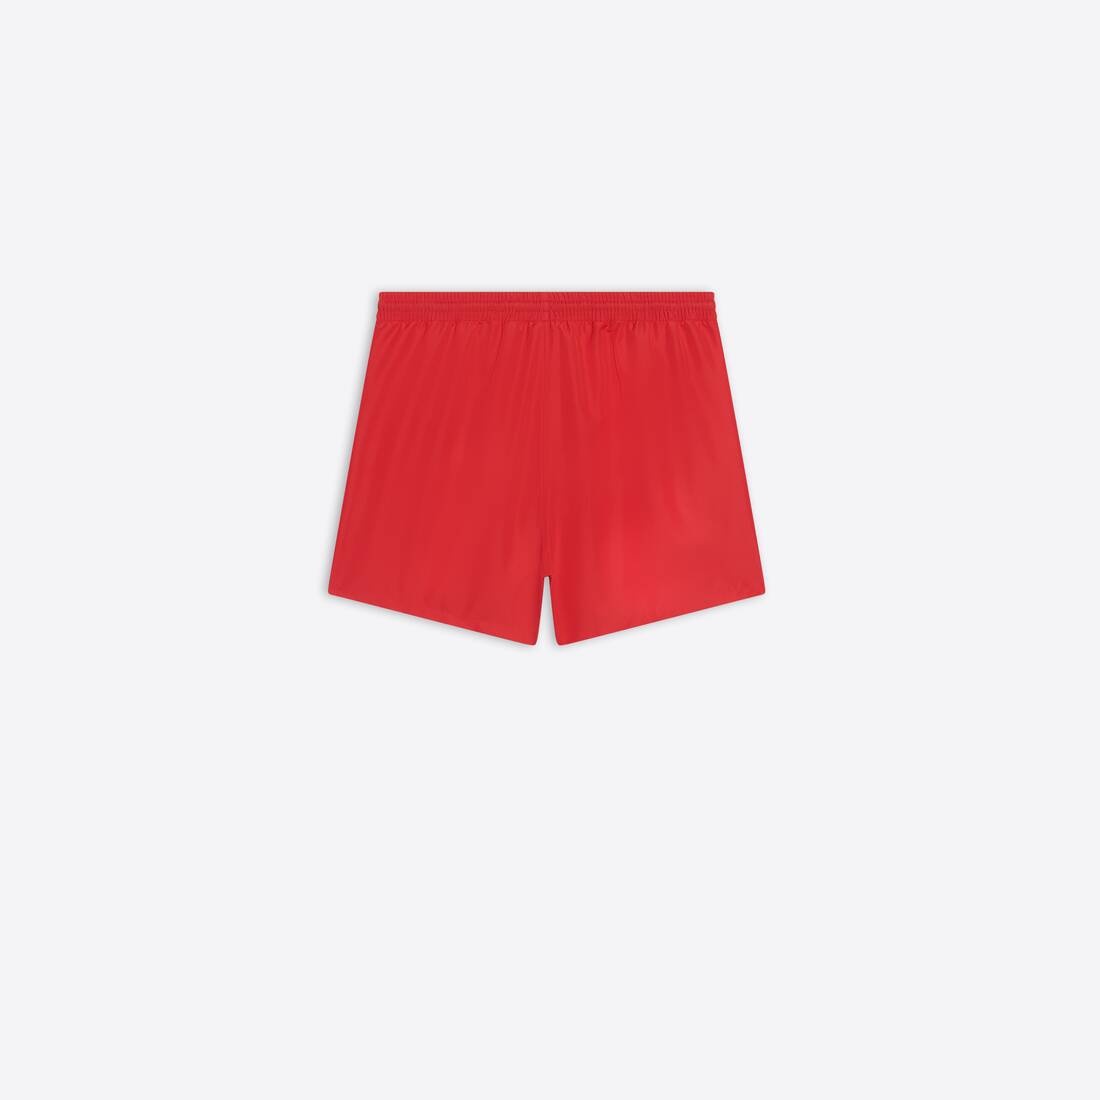 Men's Swim Shorts in Red - 2